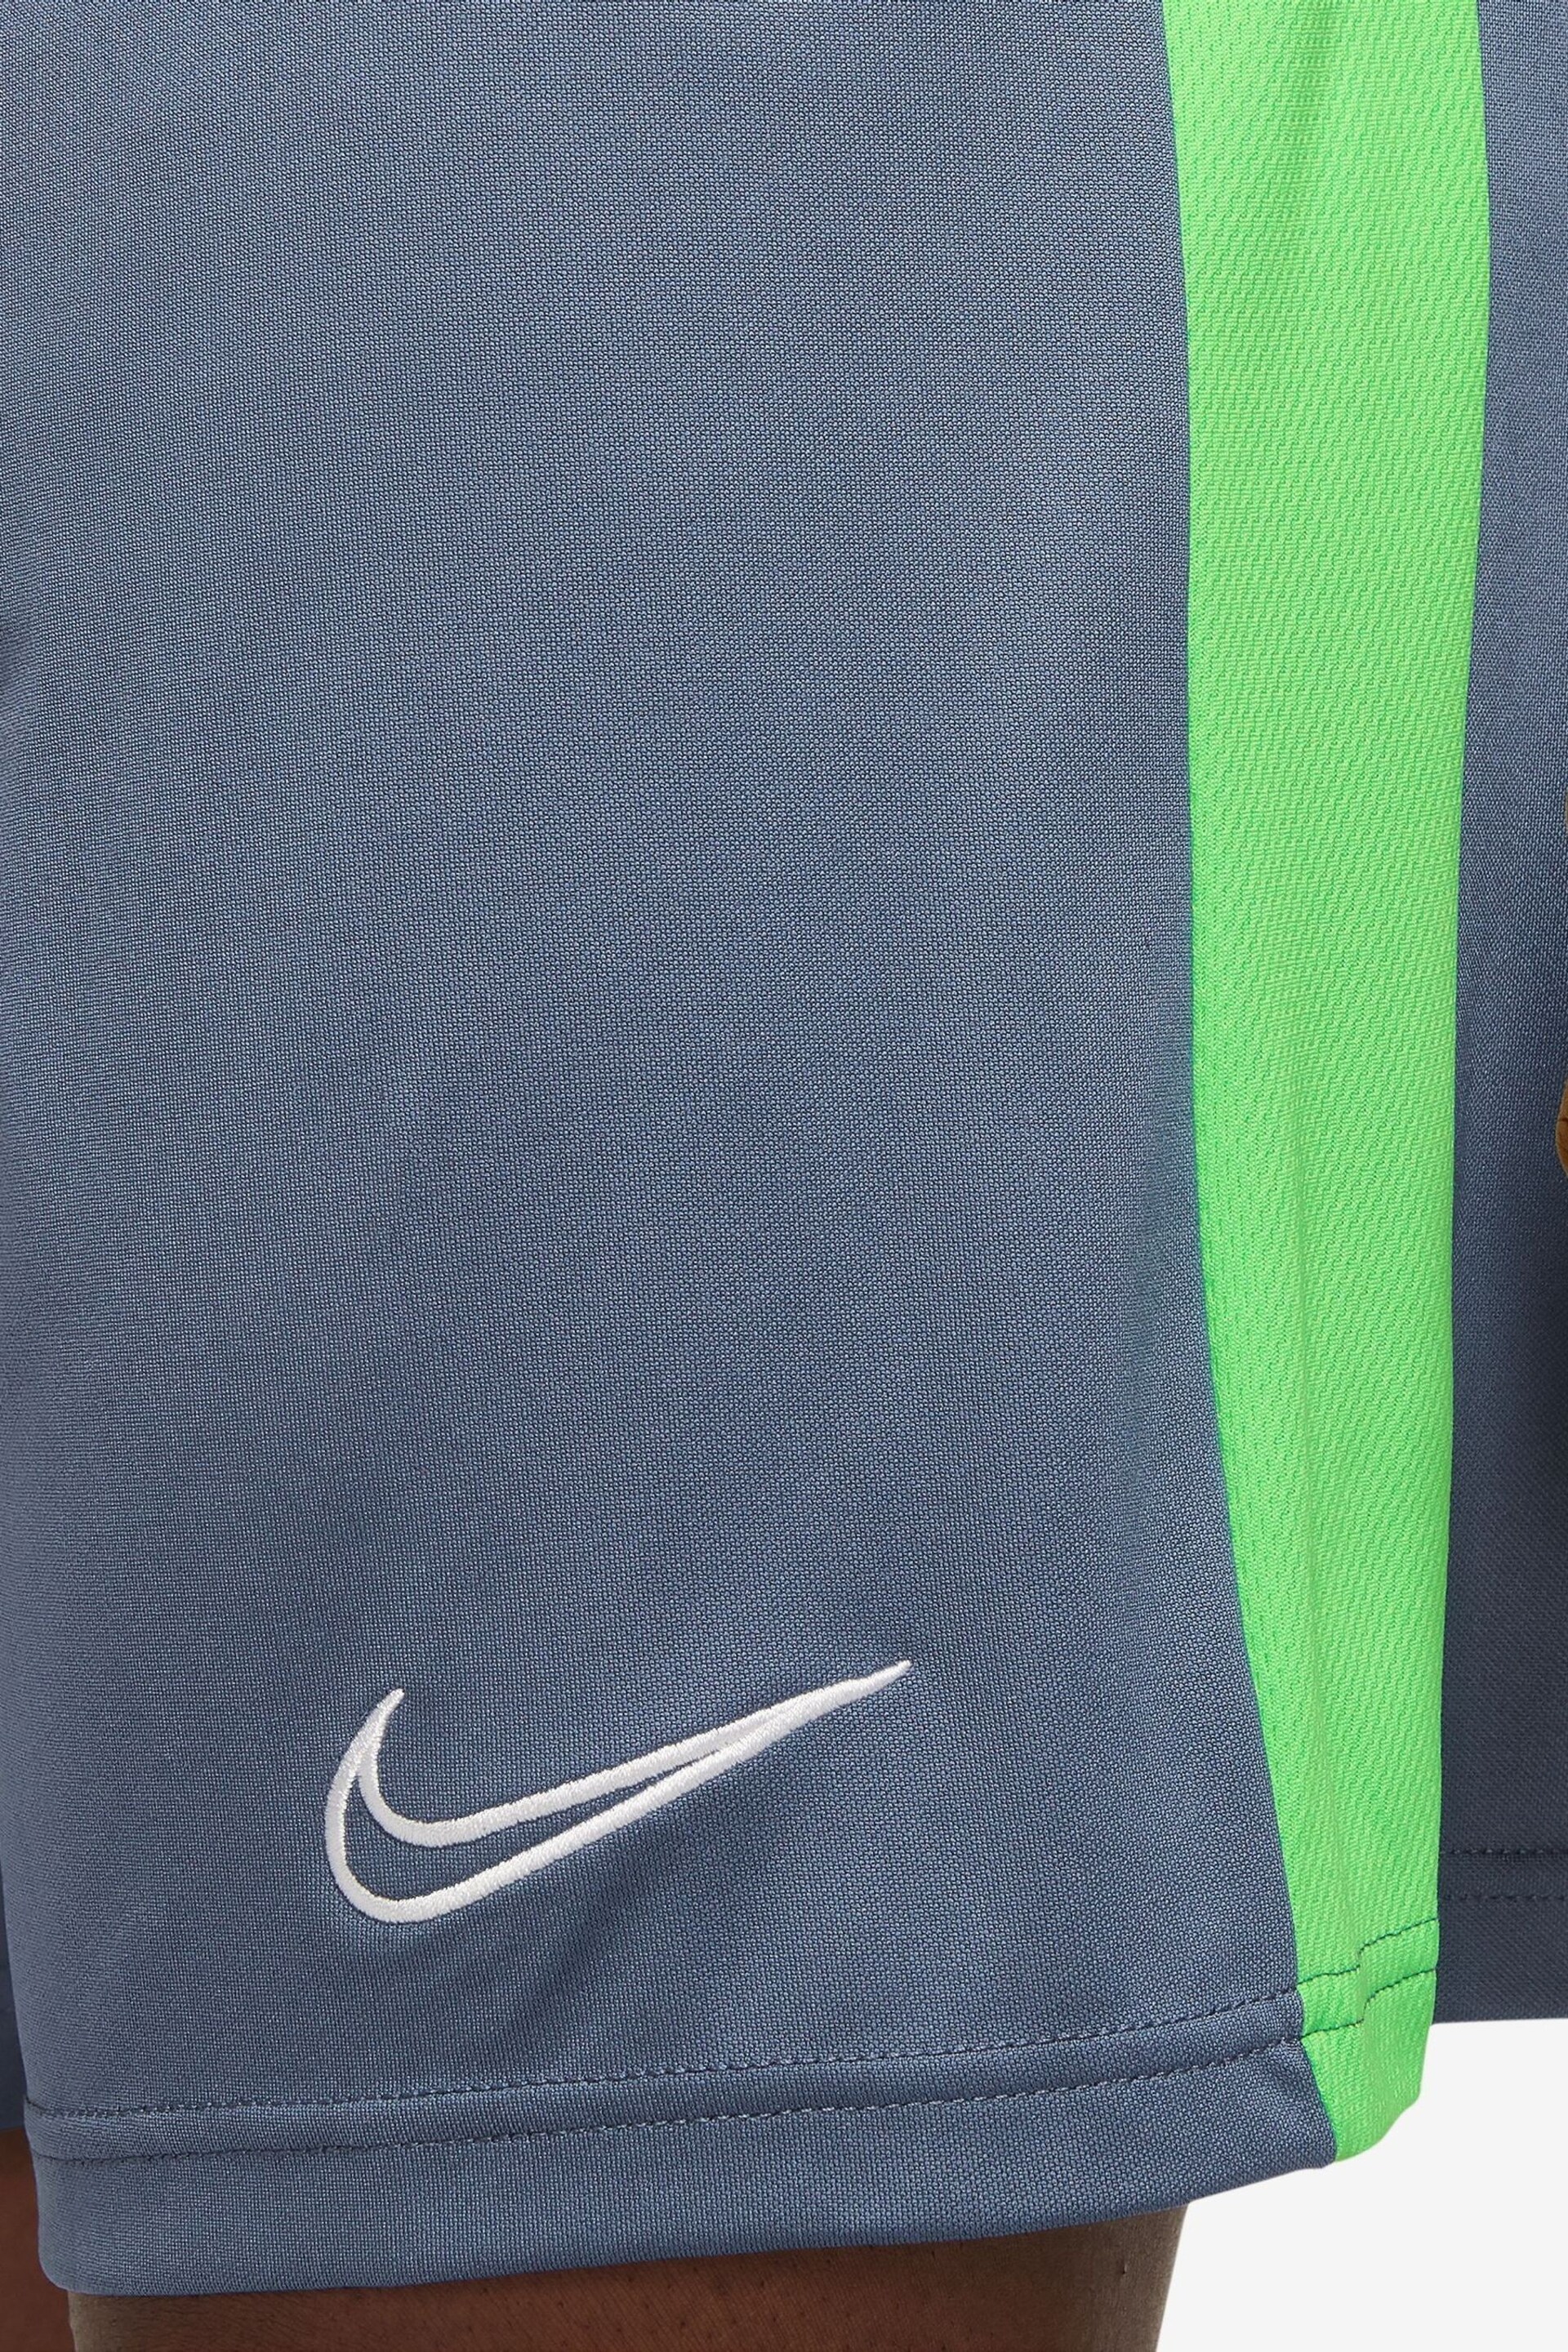 Nike Blue Dri-Fit Academy Training Shorts - Image 4 of 4